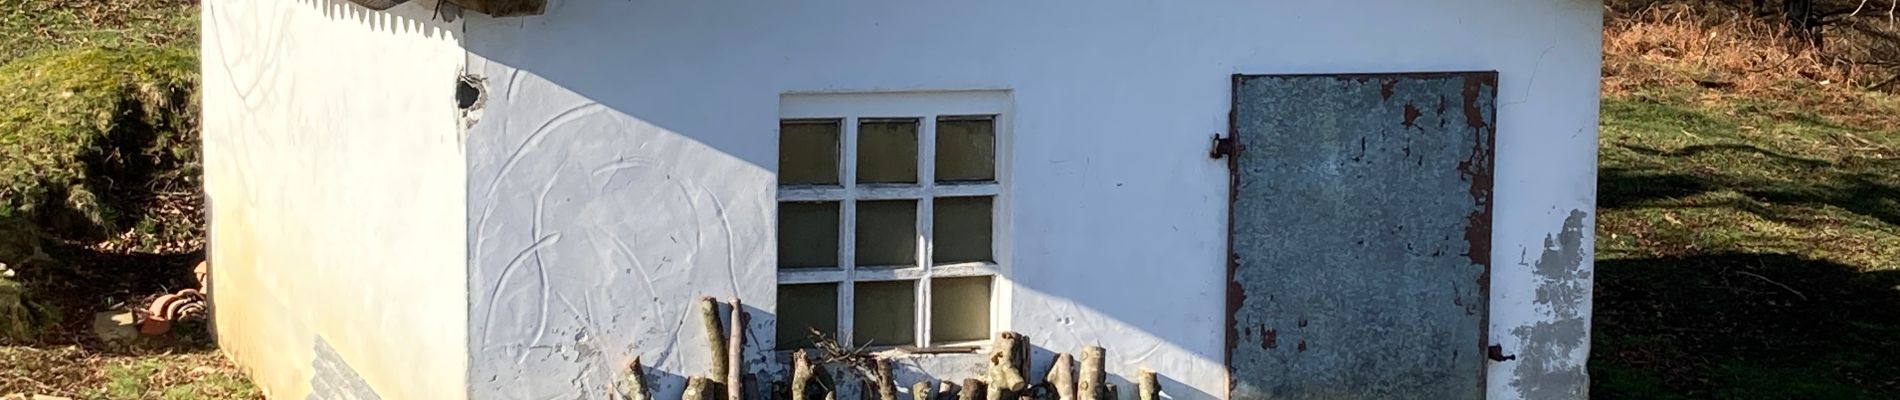 POI Etxalar - Refugio La Txabola de los Maridos Maltratados - Photo